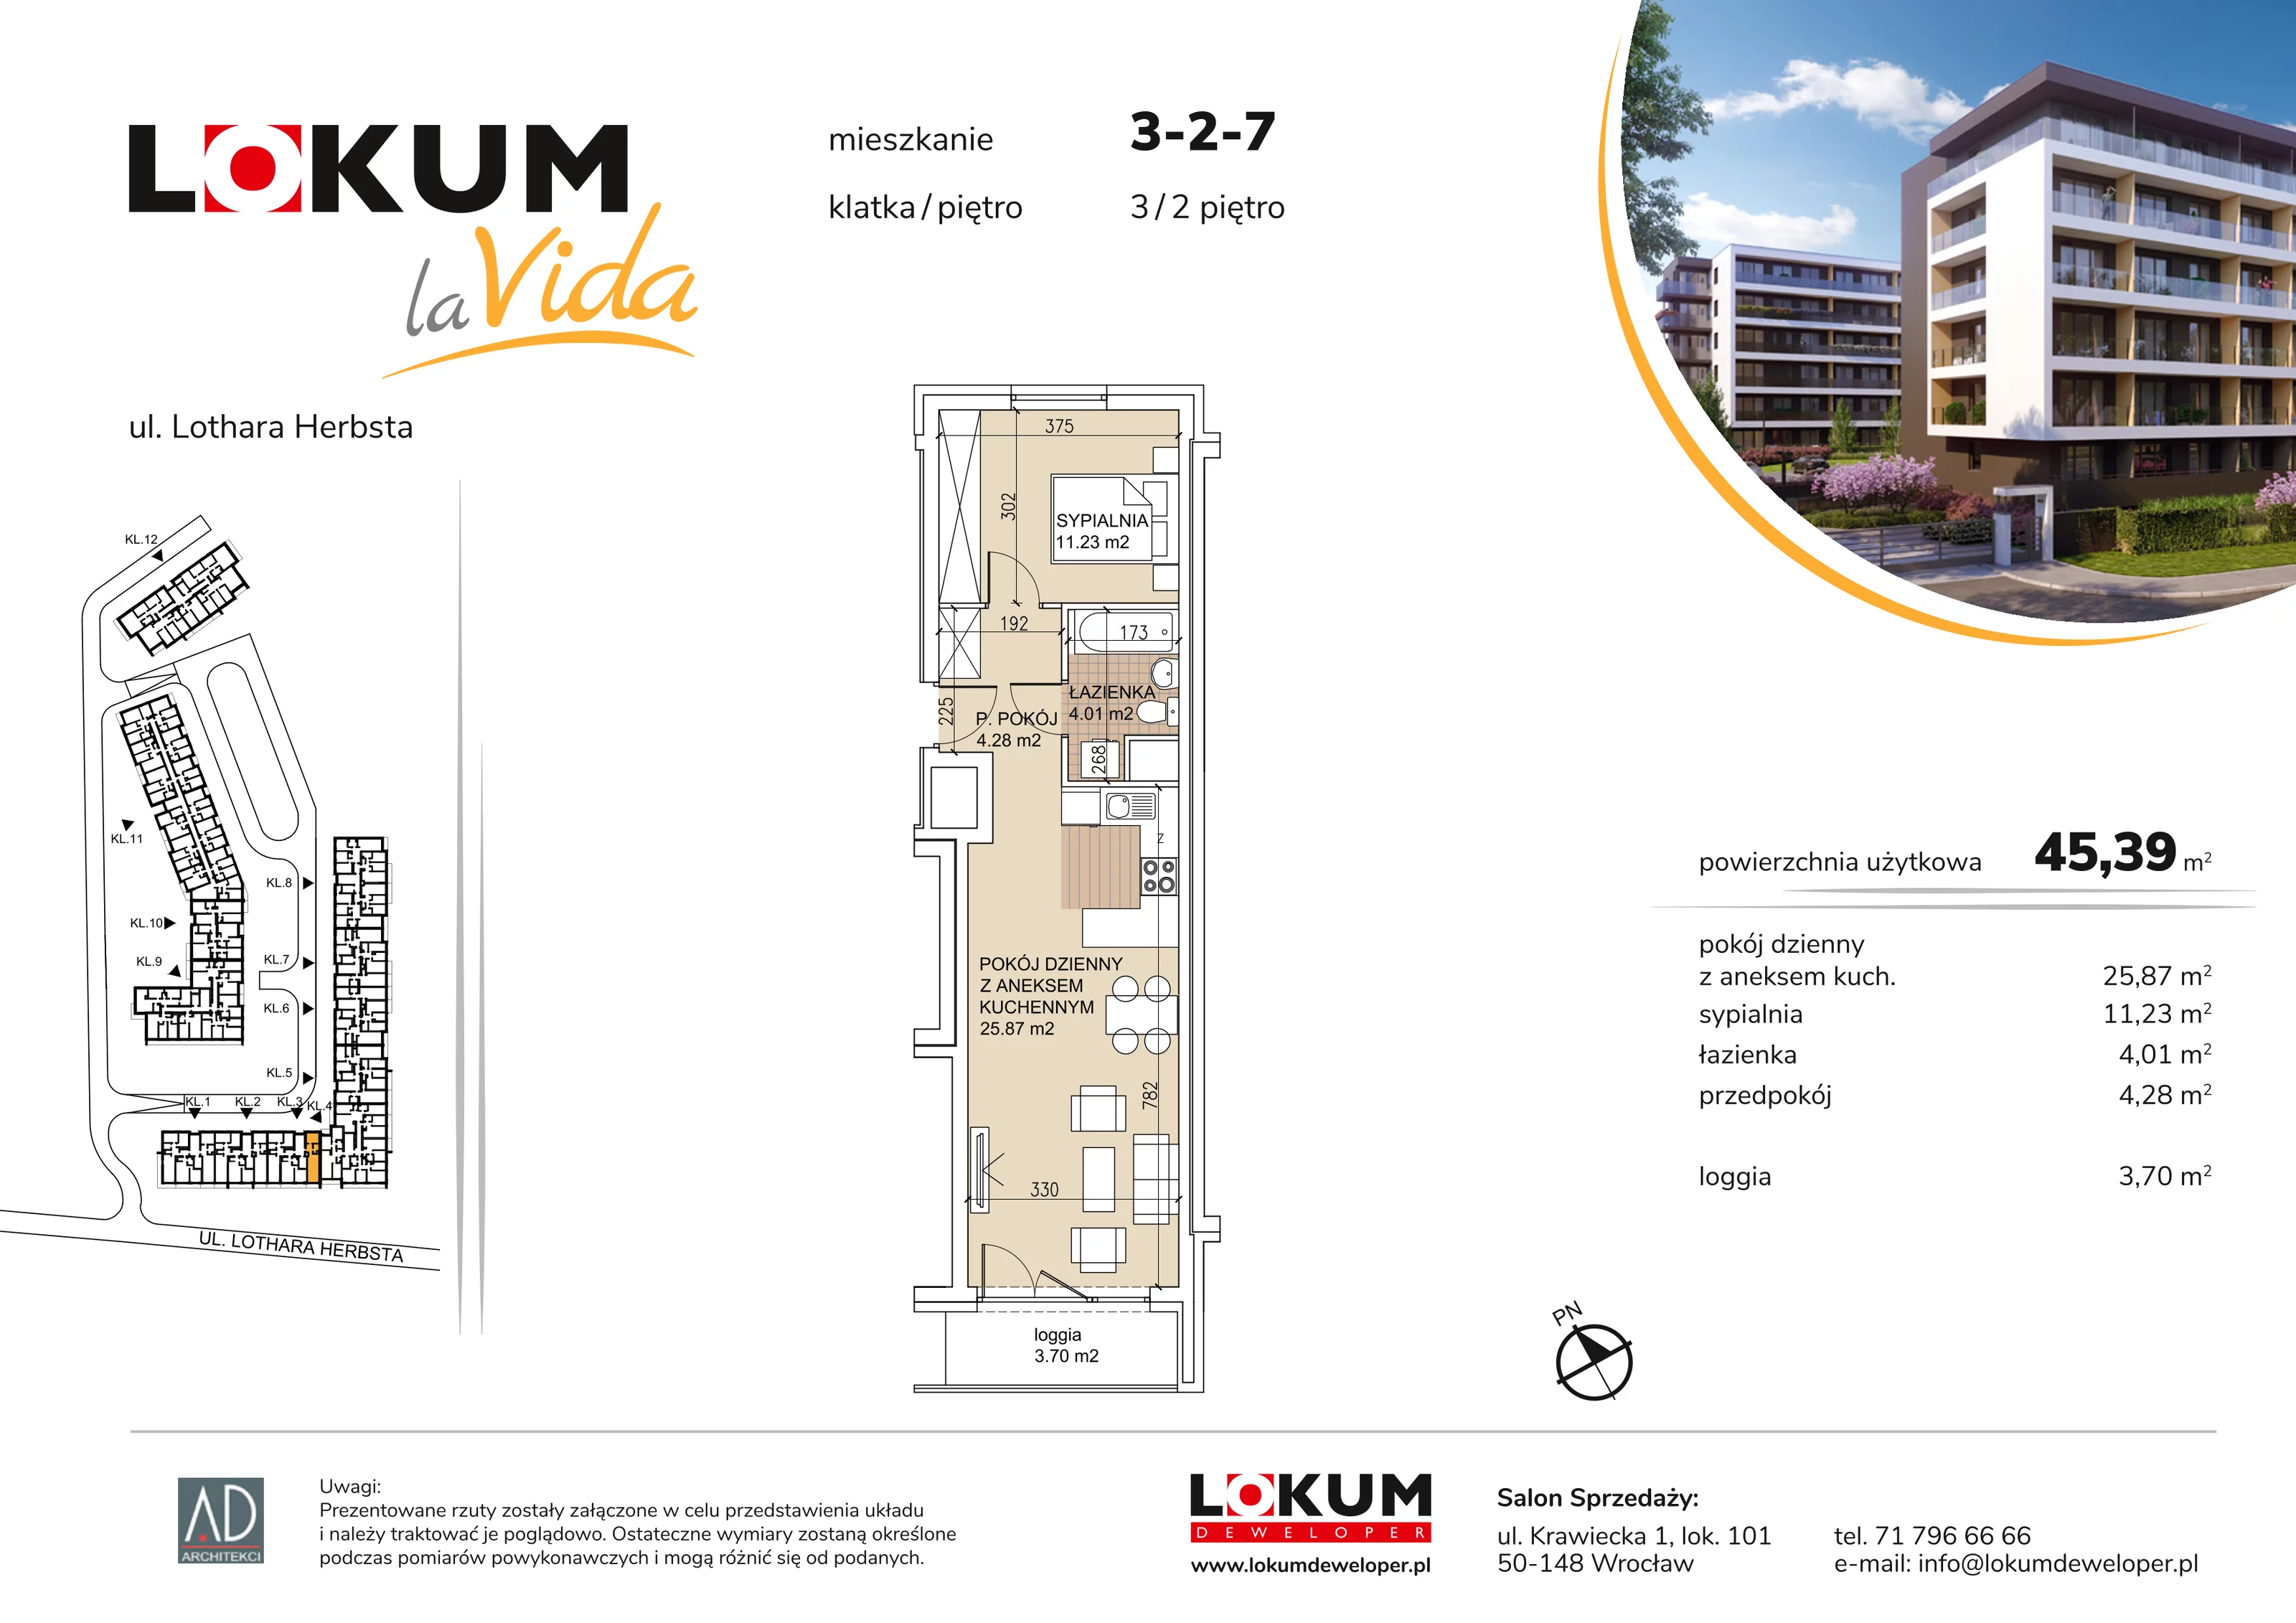 Mieszkanie 45,39 m², piętro 2, oferta nr 3-2-7, Lokum la Vida, Wrocław, Sołtysowice, ul. Lothara Herbsta